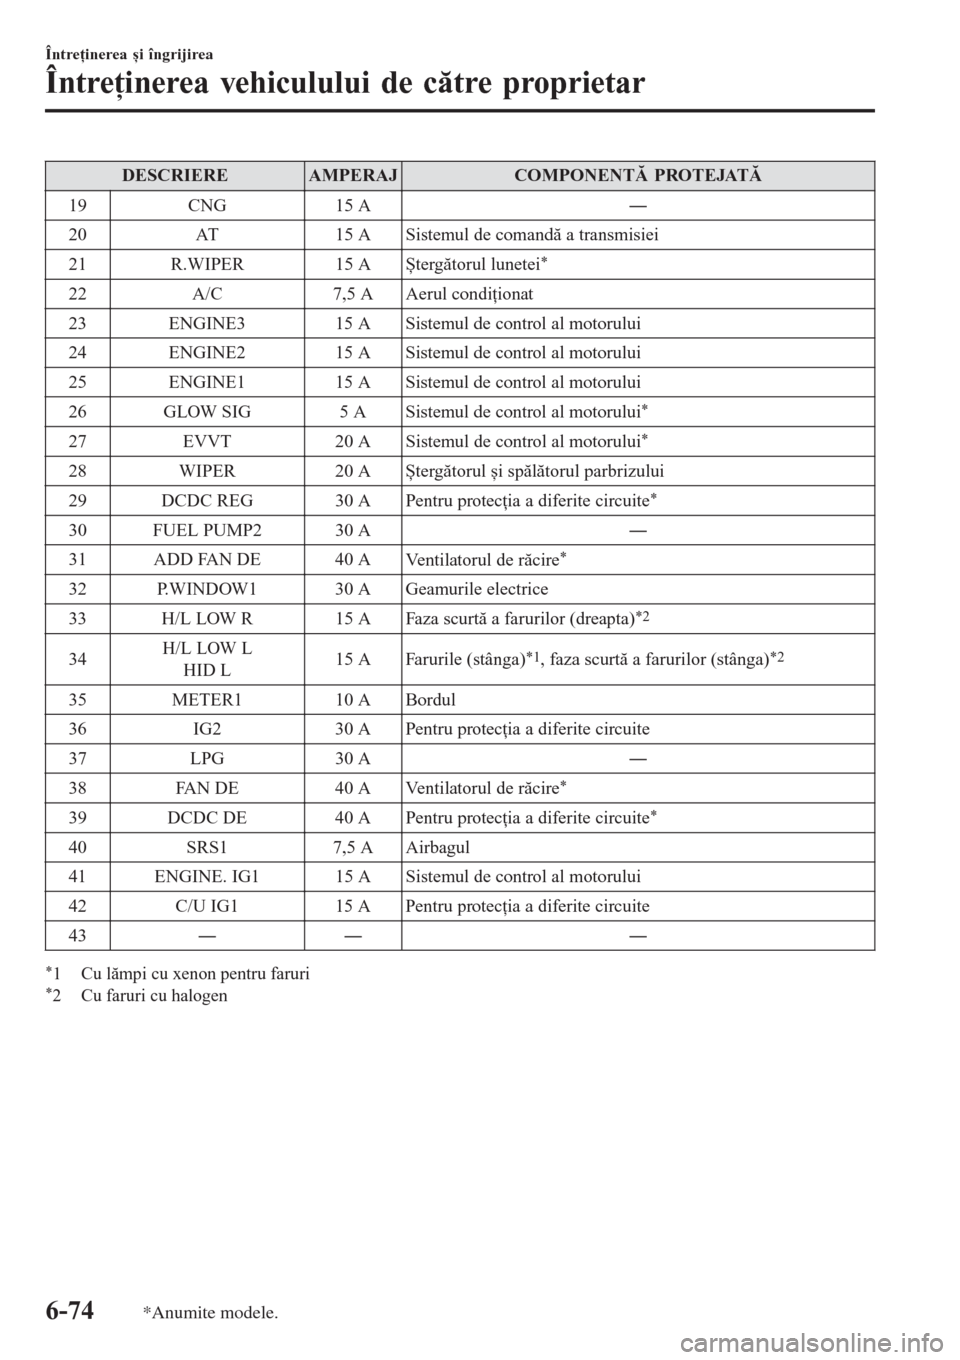 MAZDA MODEL 3 HATCHBACK 2015  Manualul de utilizare (in Romanian) DESCRIEREAMPERAJCOMPONENTĂ PROTEJATĂ
19 CNG 15 AŠ
20 AT 15 A Sistemul de comandă a transmisiei
21 R.WIPER 15 A
Ștergătorul lunetei
*
22 A/C 7,5 A Aerul condiţionat
23 ENGINE3 15 A Sistemul de 